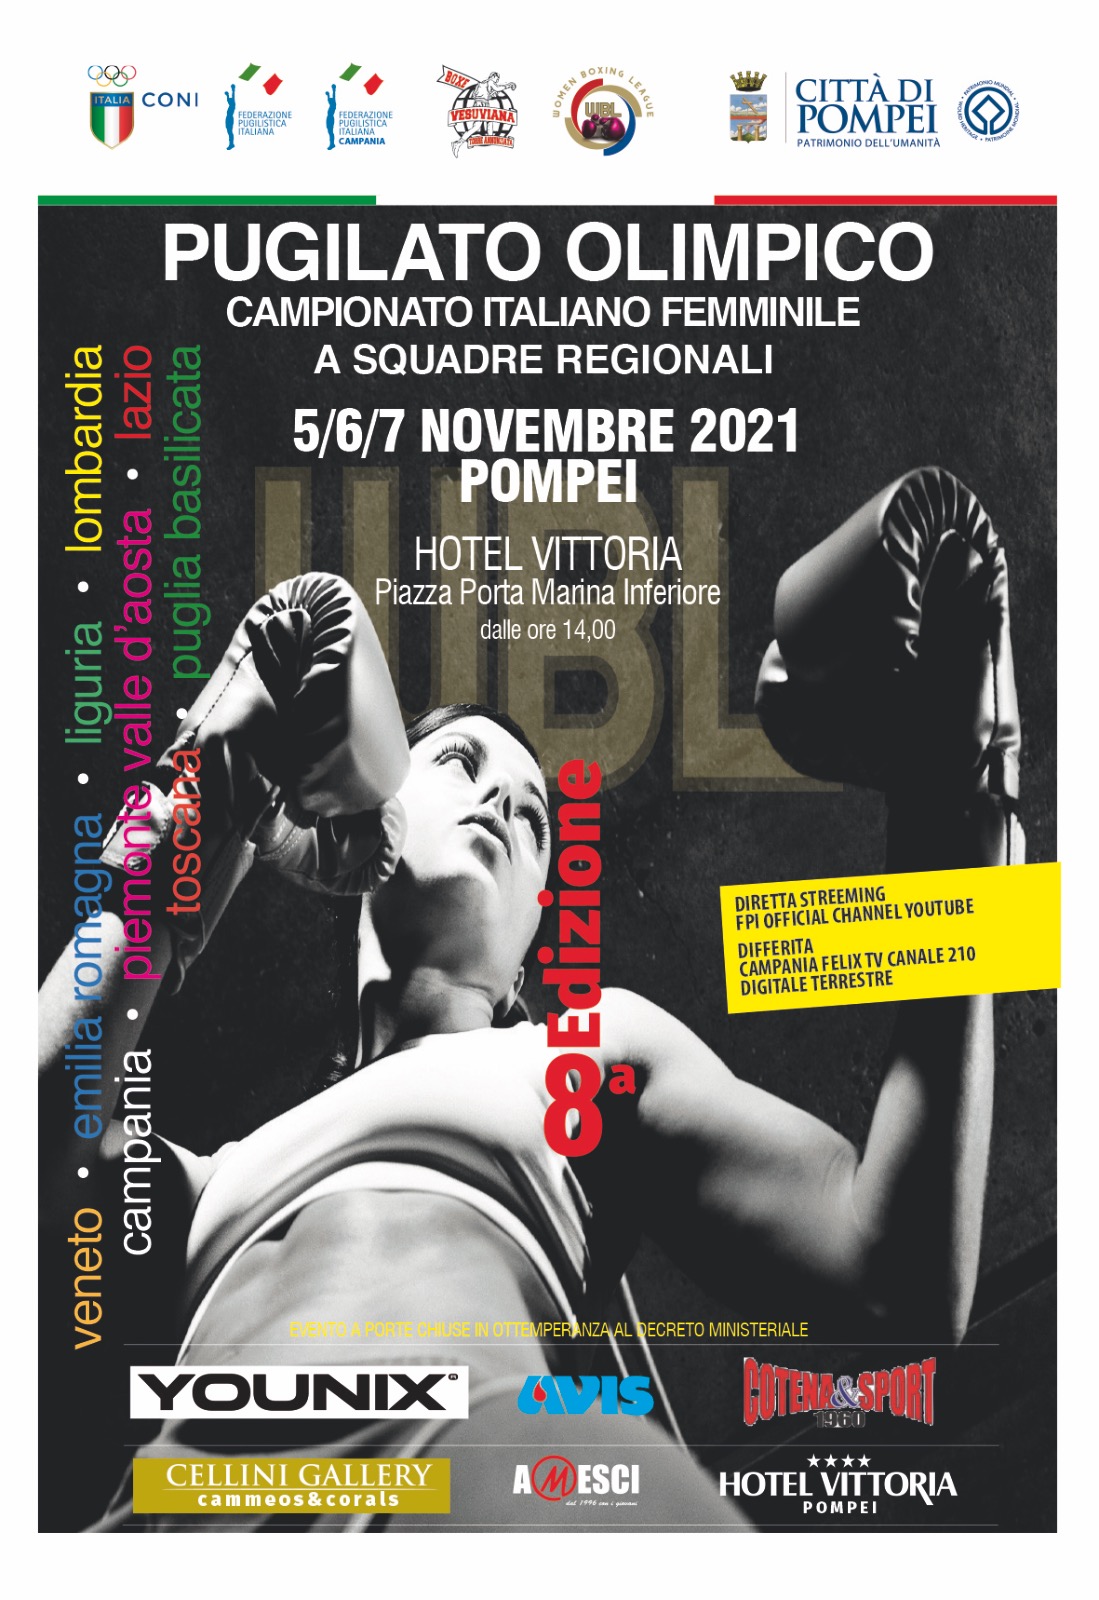 WBL 2021 - Pompei dal 5 al 7 Novembre: INFO PROGRAMMA MATCH & LIVESTREAMING 